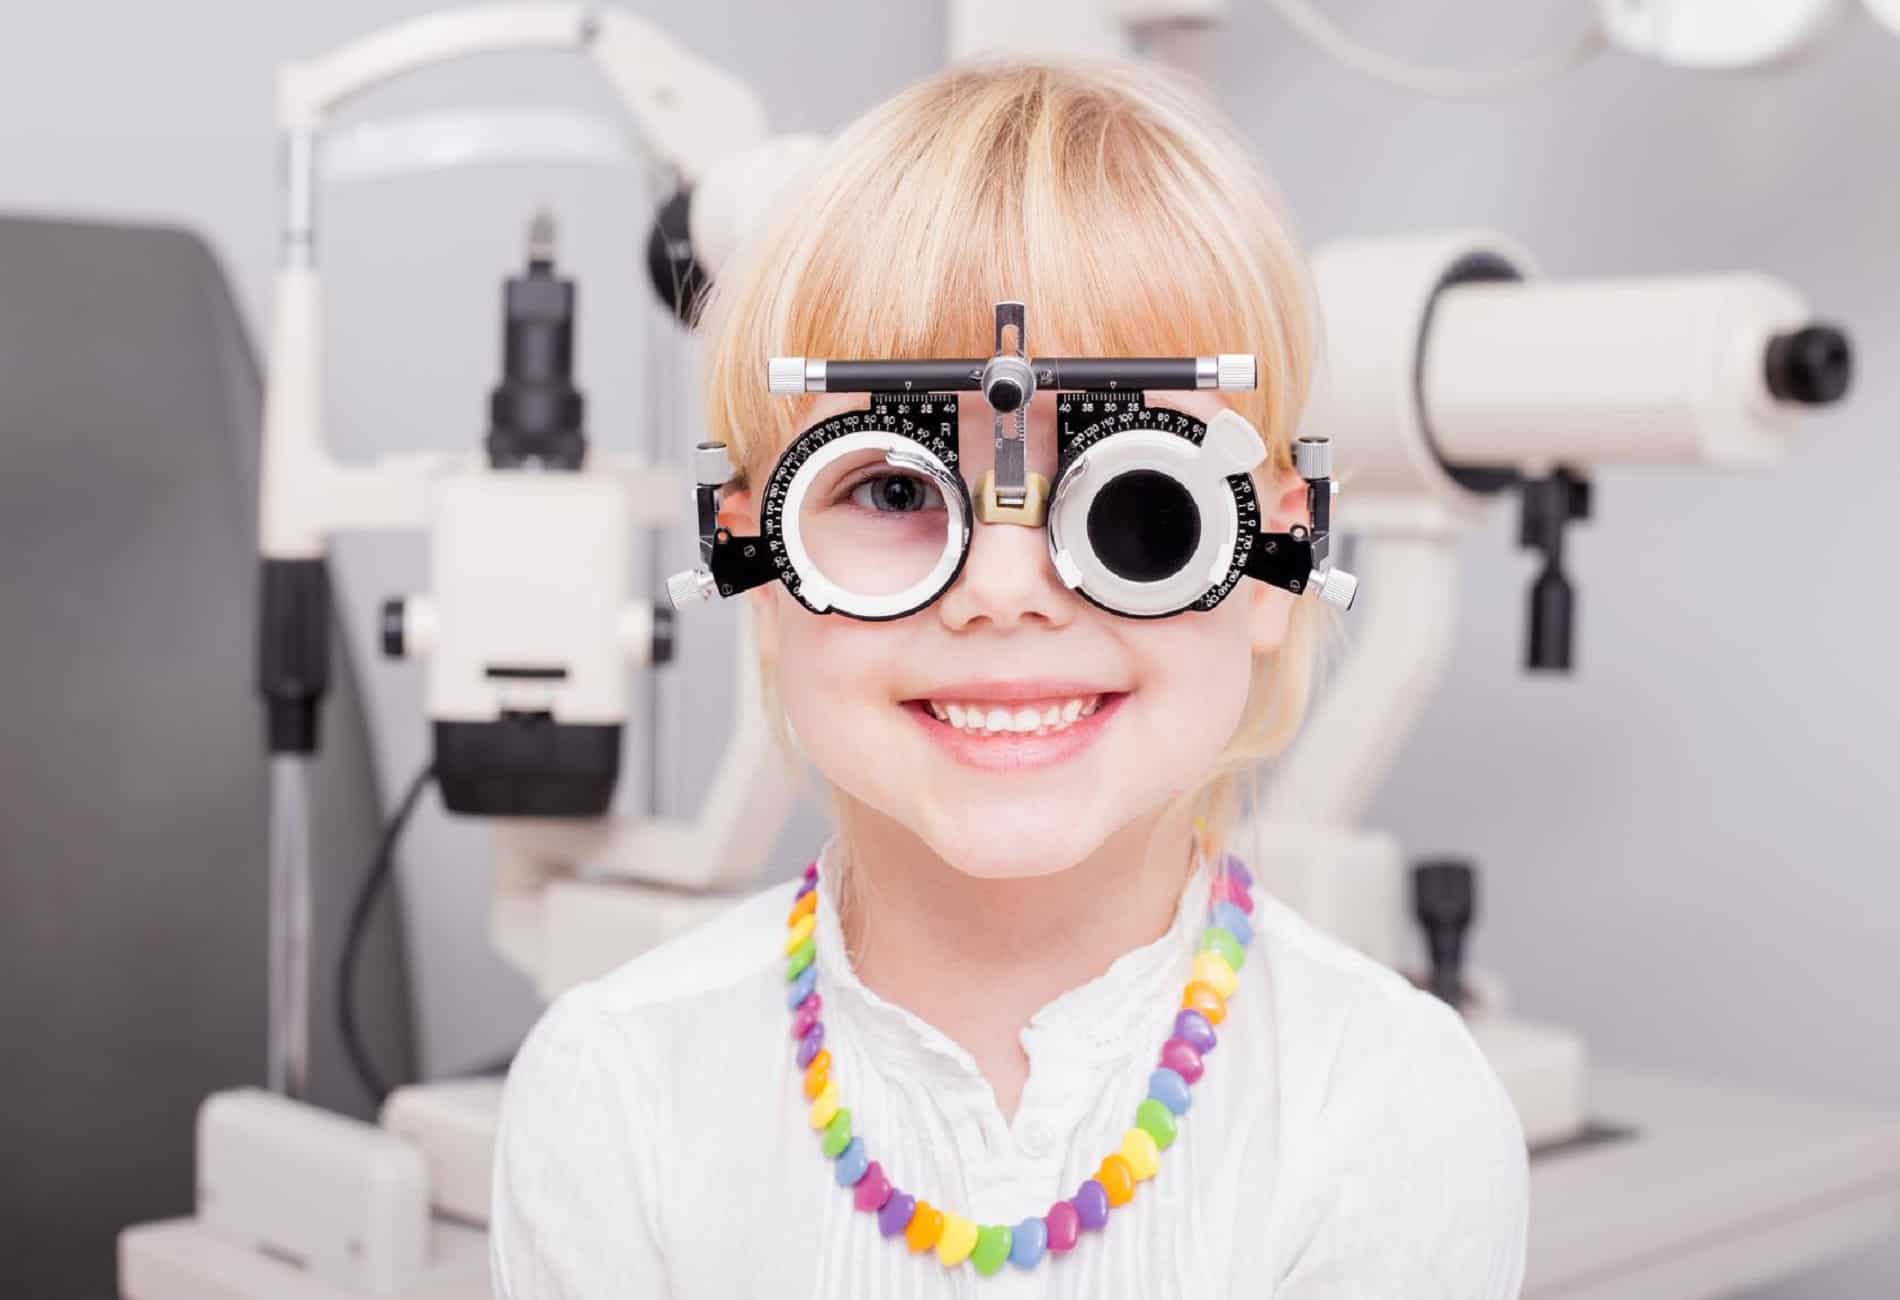 الكشف الدوري على بصر الأطفال يحمي من ضعف النظر في المستقبل